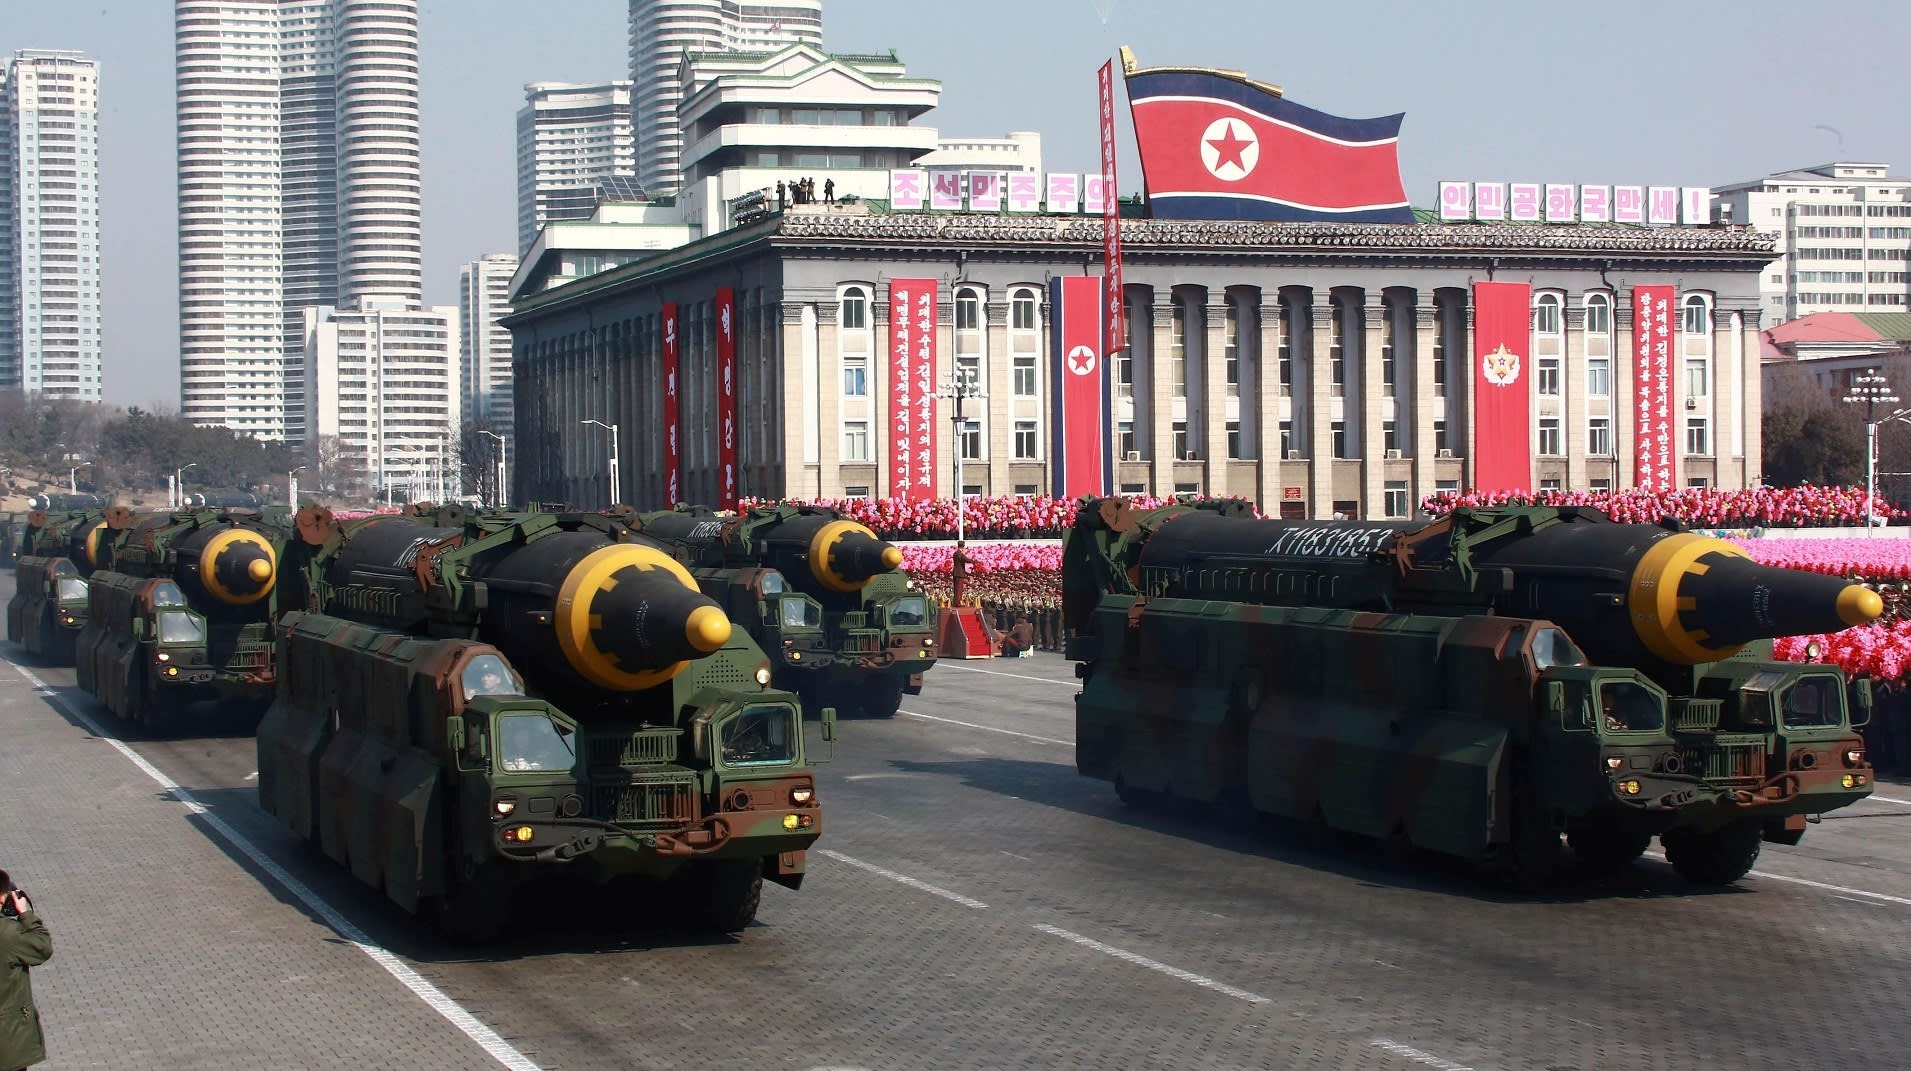 Phản ứng với tín hiệu mở của Triều Tiên gửi Nhật Bản, Mỹ nói 'đó là chữ nếu khá lớn' Nguồn: KCNA)